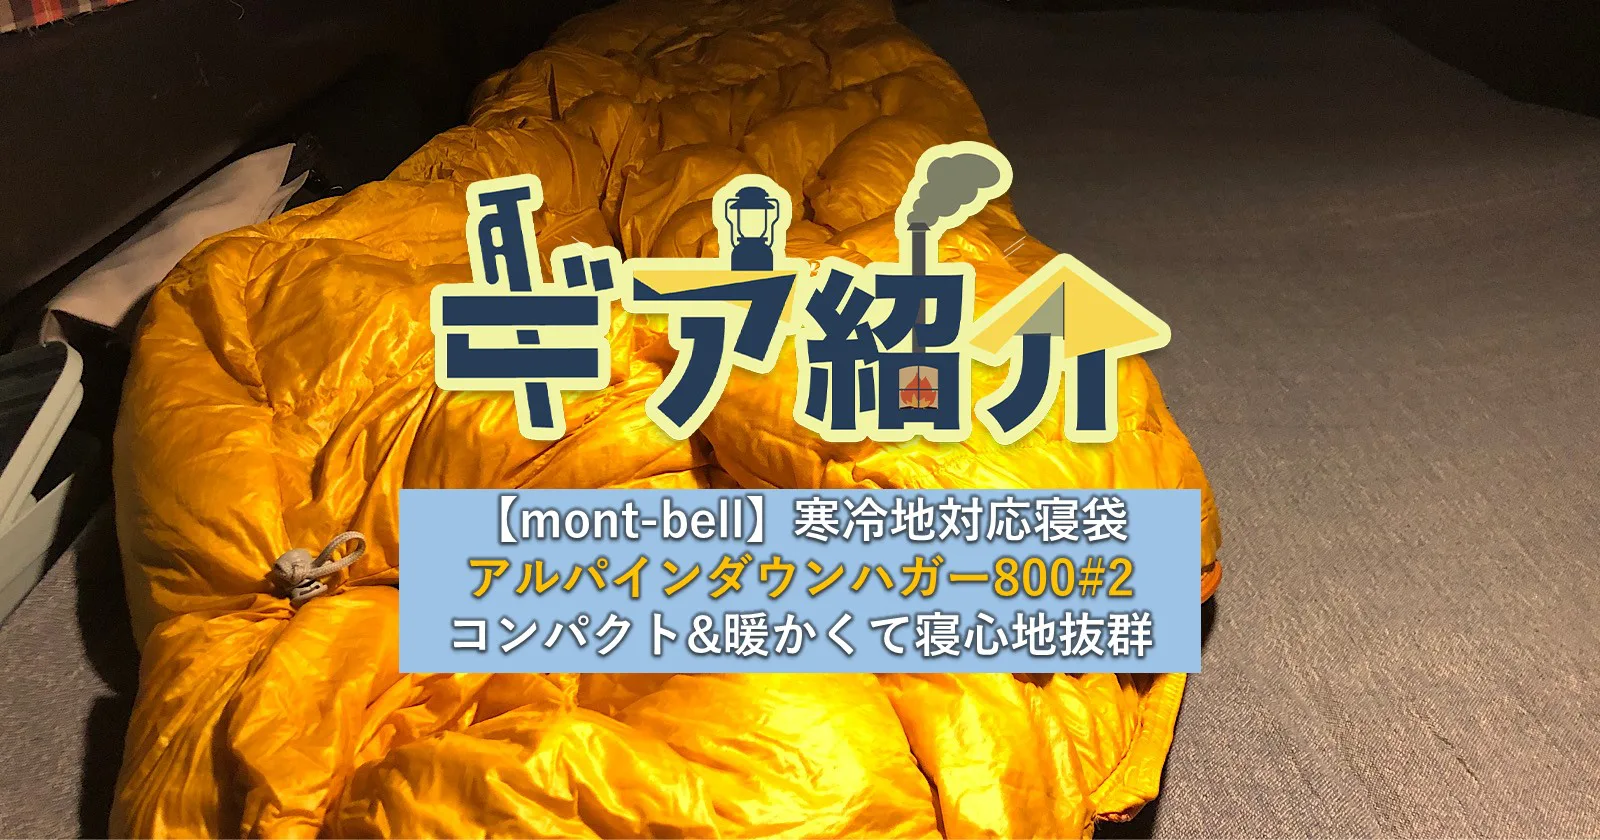 Mont Bell 寒冷地対応寝袋アルパインダウンハガー800 2は コンパクトなのに暖かくて寝心地抜群 キャンプ アウトドアのtakibi タキビ